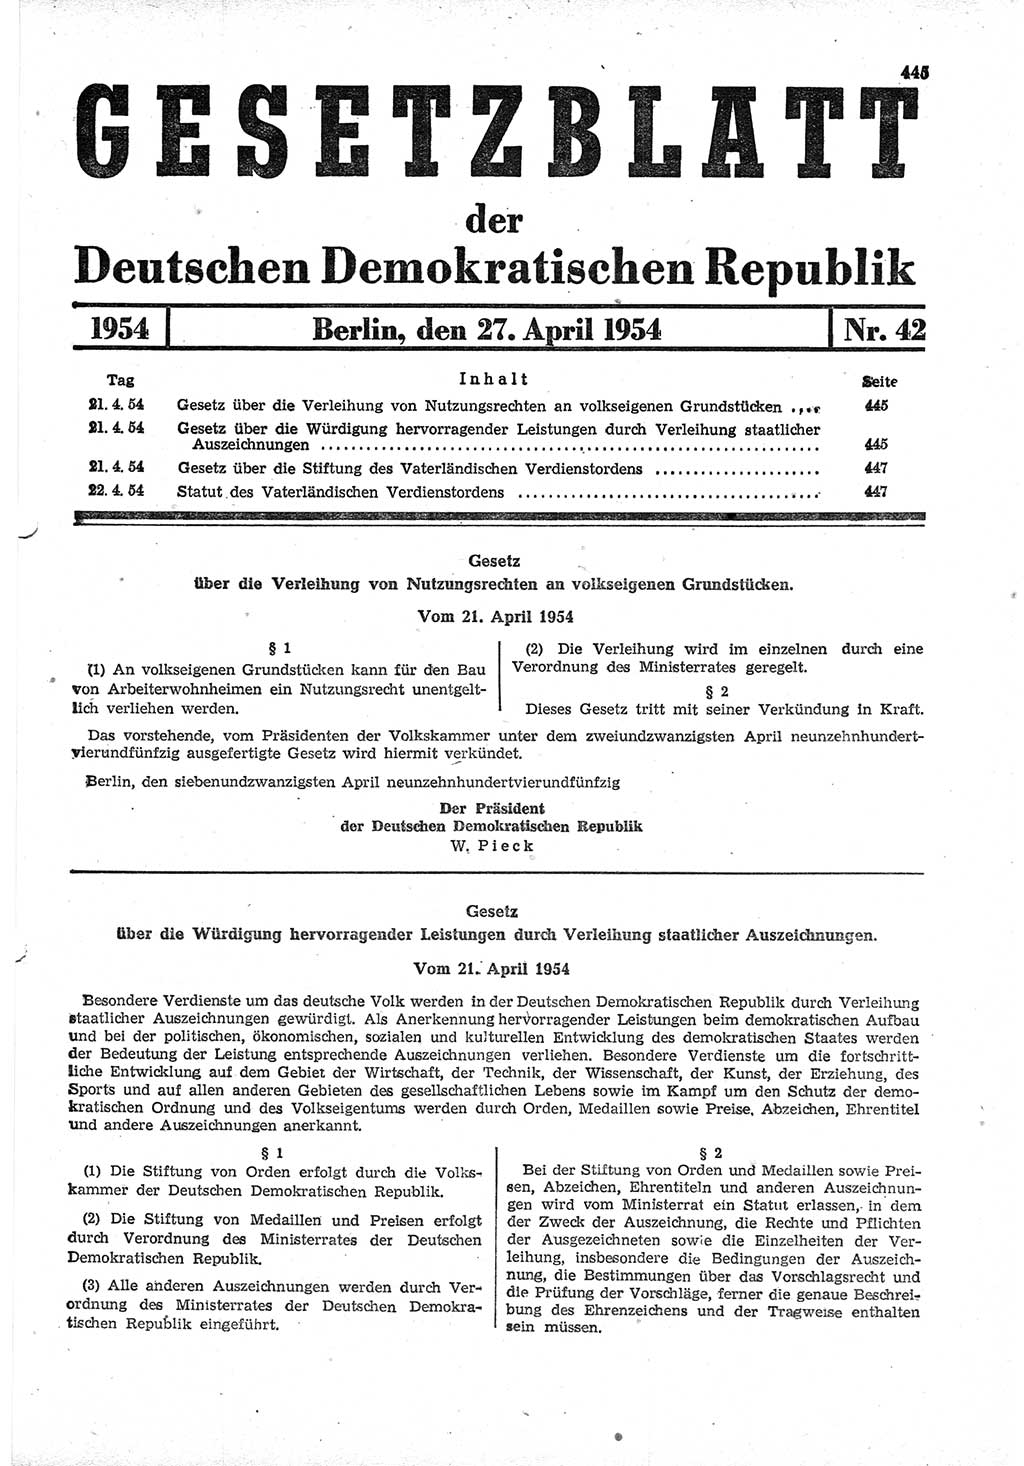 Gesetzblatt (GBl.) der Deutschen Demokratischen Republik (DDR) 1954, Seite 445 (GBl. DDR 1954, S. 445)